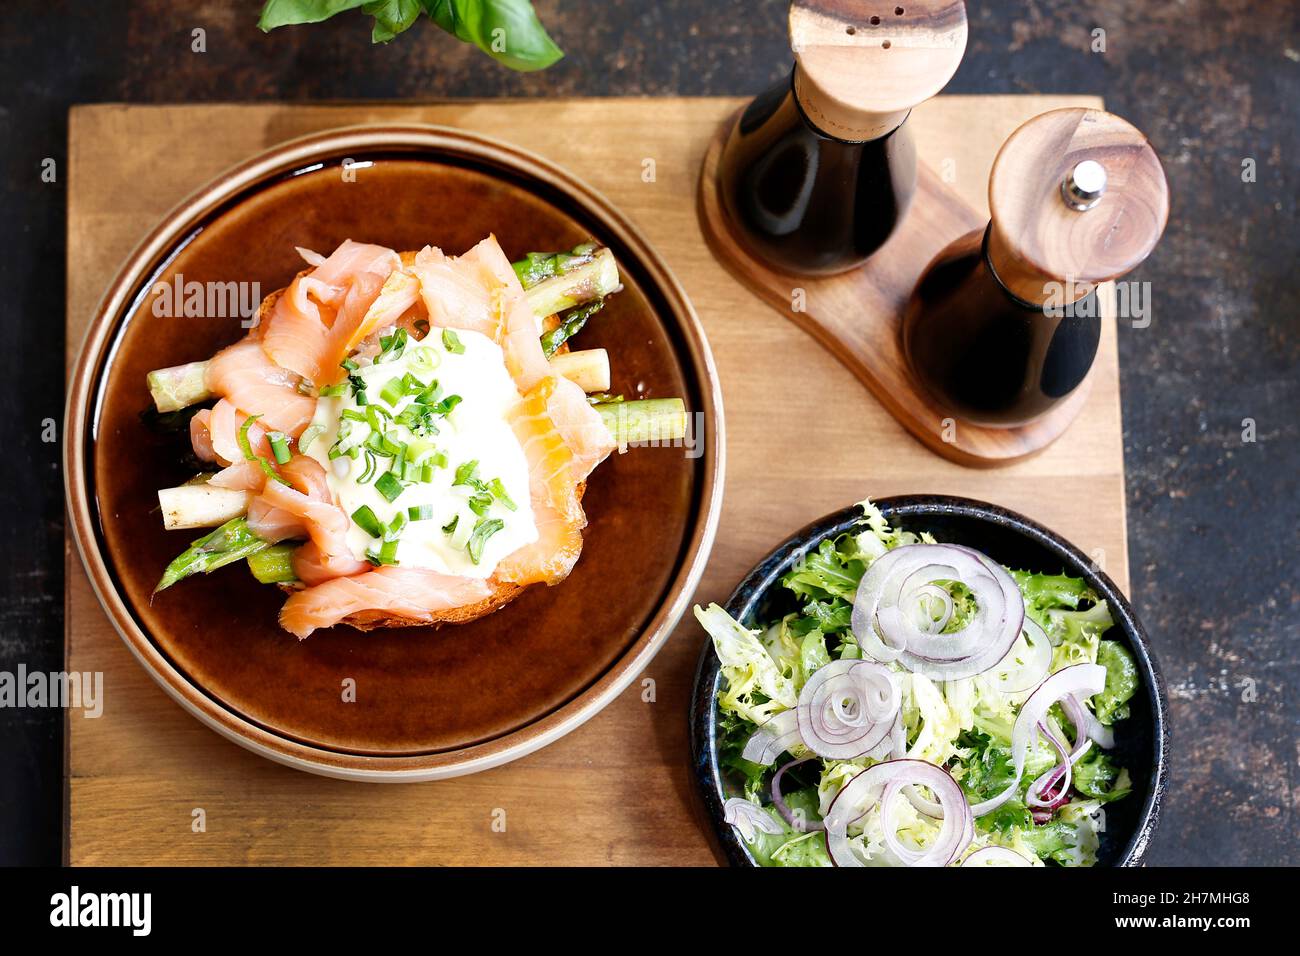 Sandwich au saumon fumé et aux asperges, servi avec une salade verte.Un délicieux plat.photographie culinaire.Suggestion de servir le plat. Banque D'Images